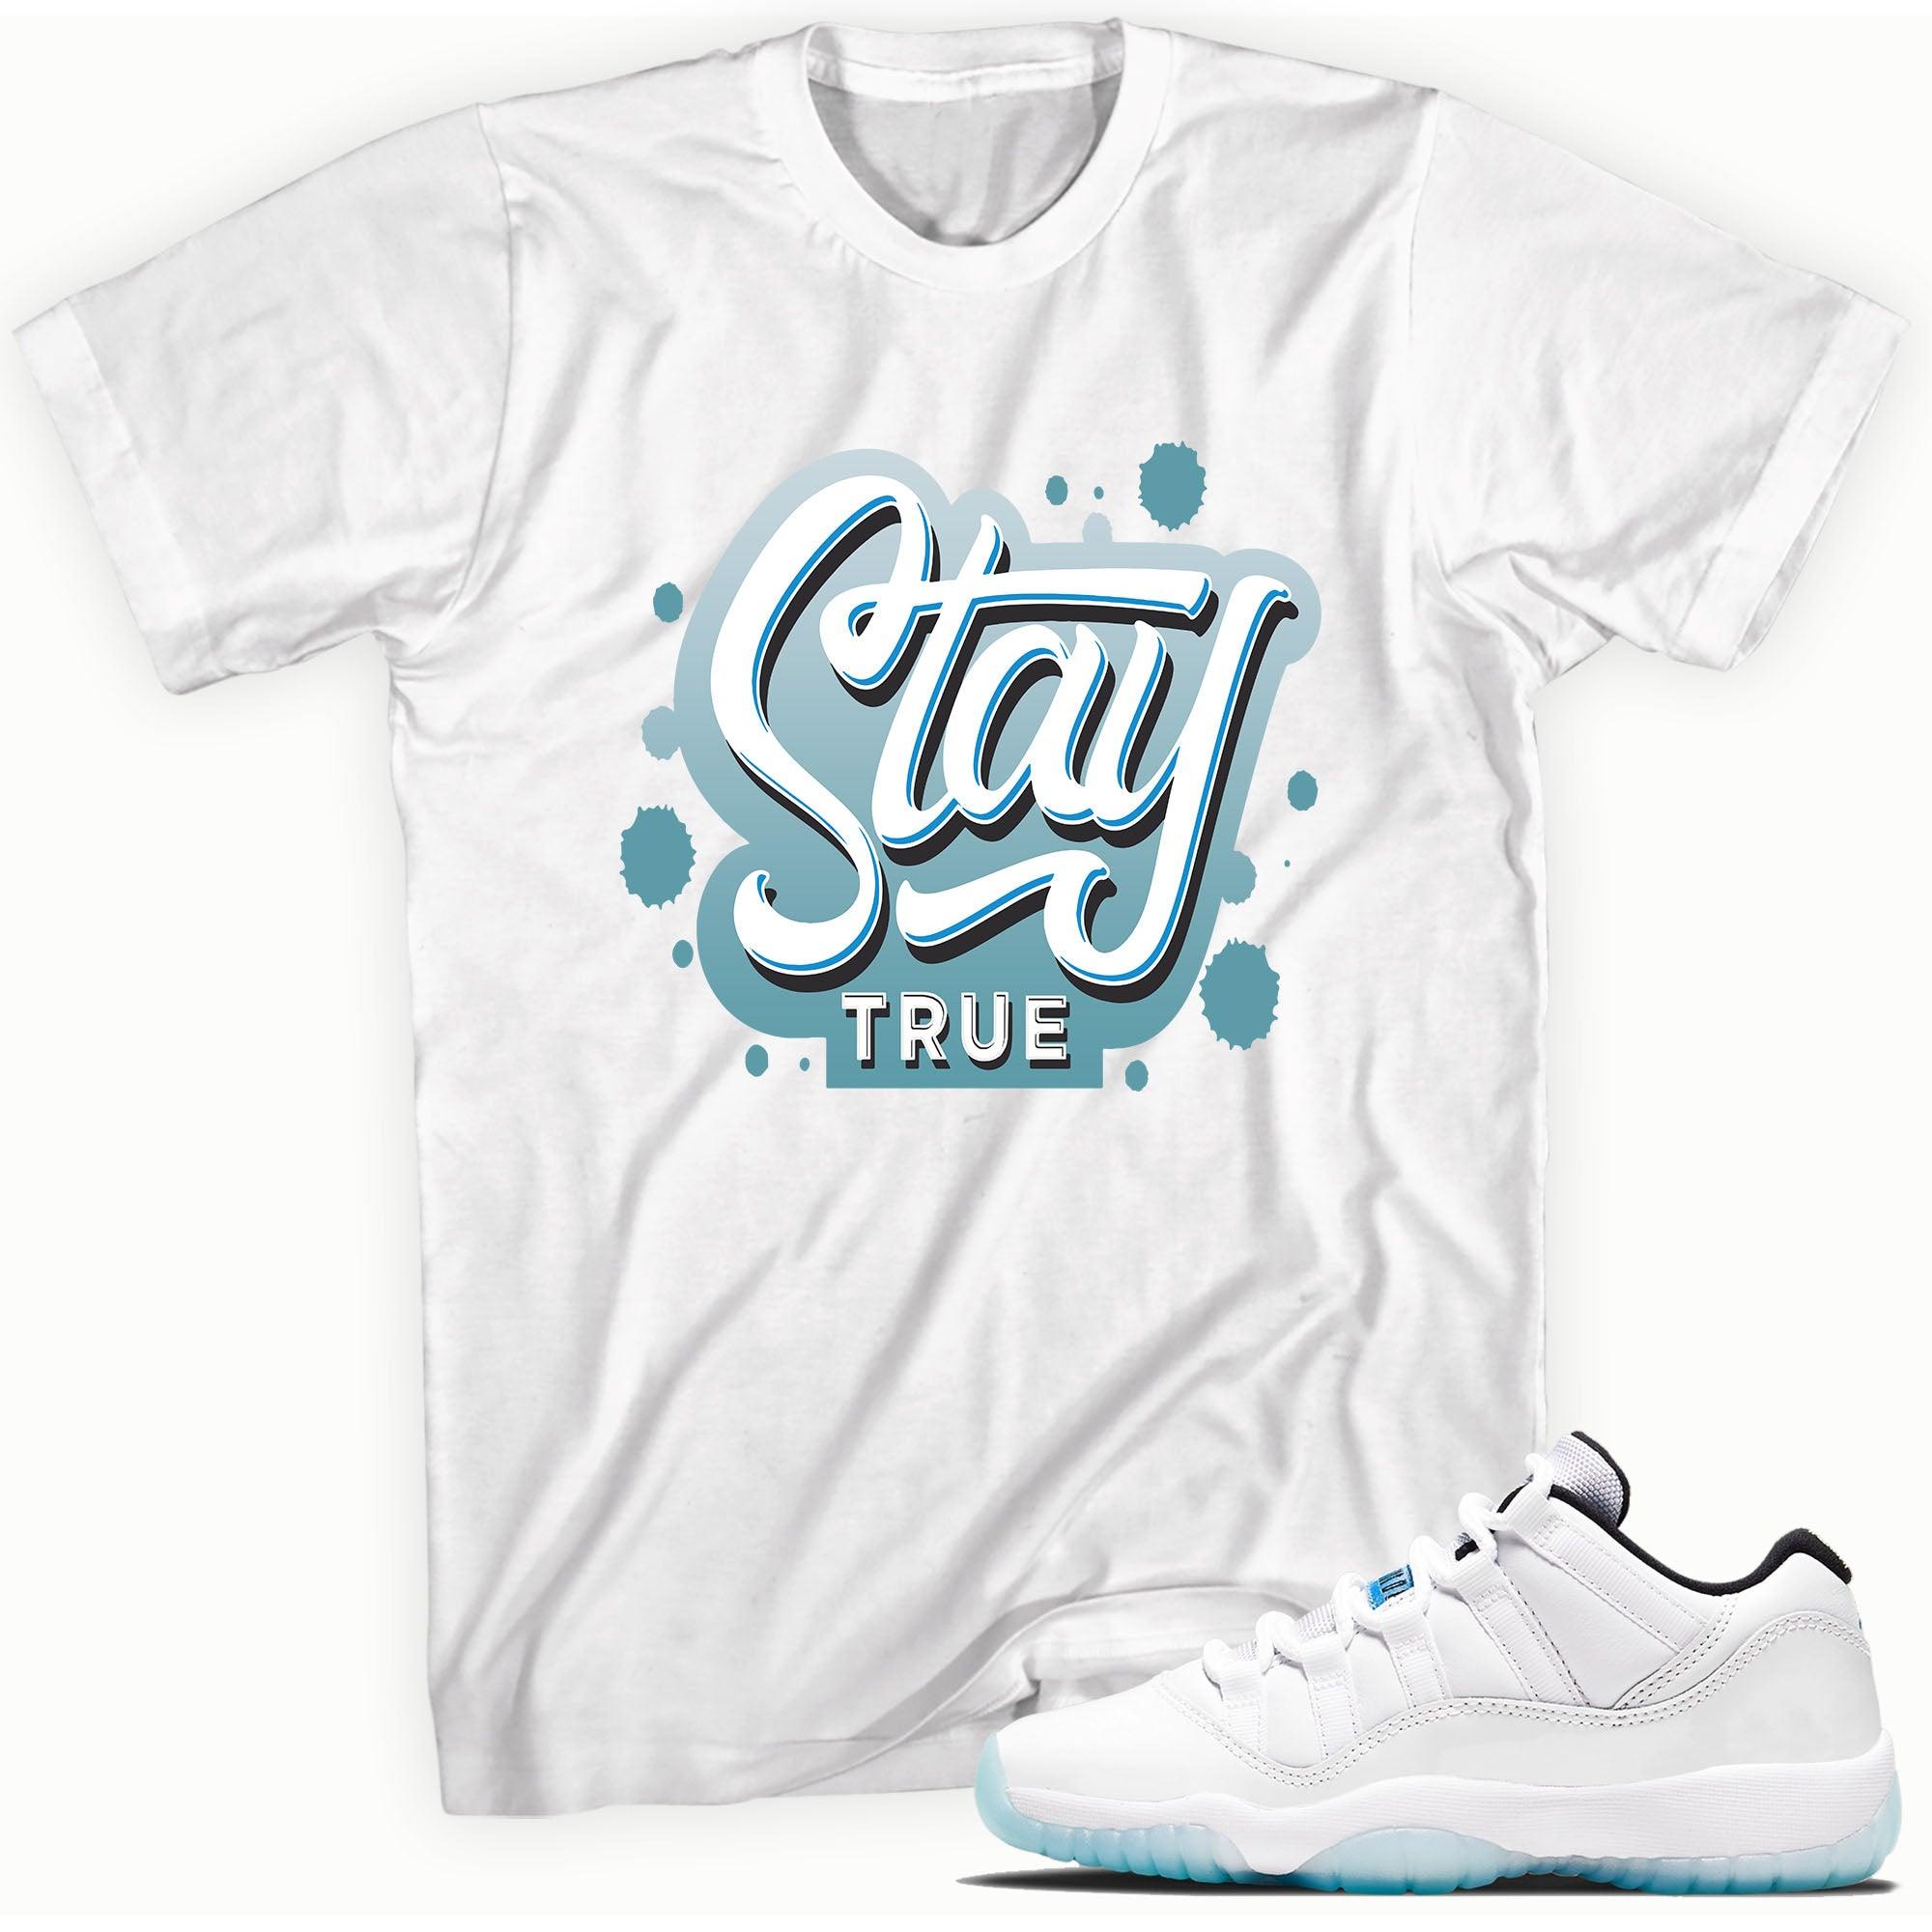 Stay True Sneaker Tee AJ 11 Retro Low Legend Blue photo